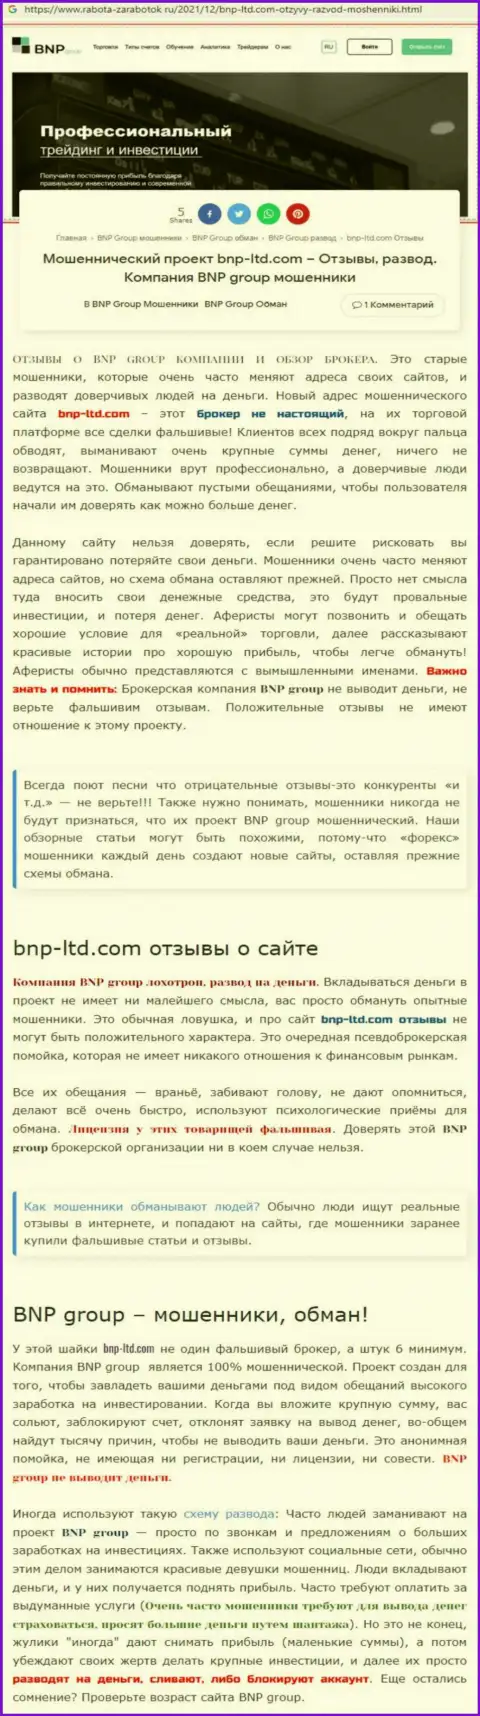 О перечисленных в компанию БНПЛтд кровно нажитых можете позабыть, крадут все до последнего рубля (обзор противозаконных действий)